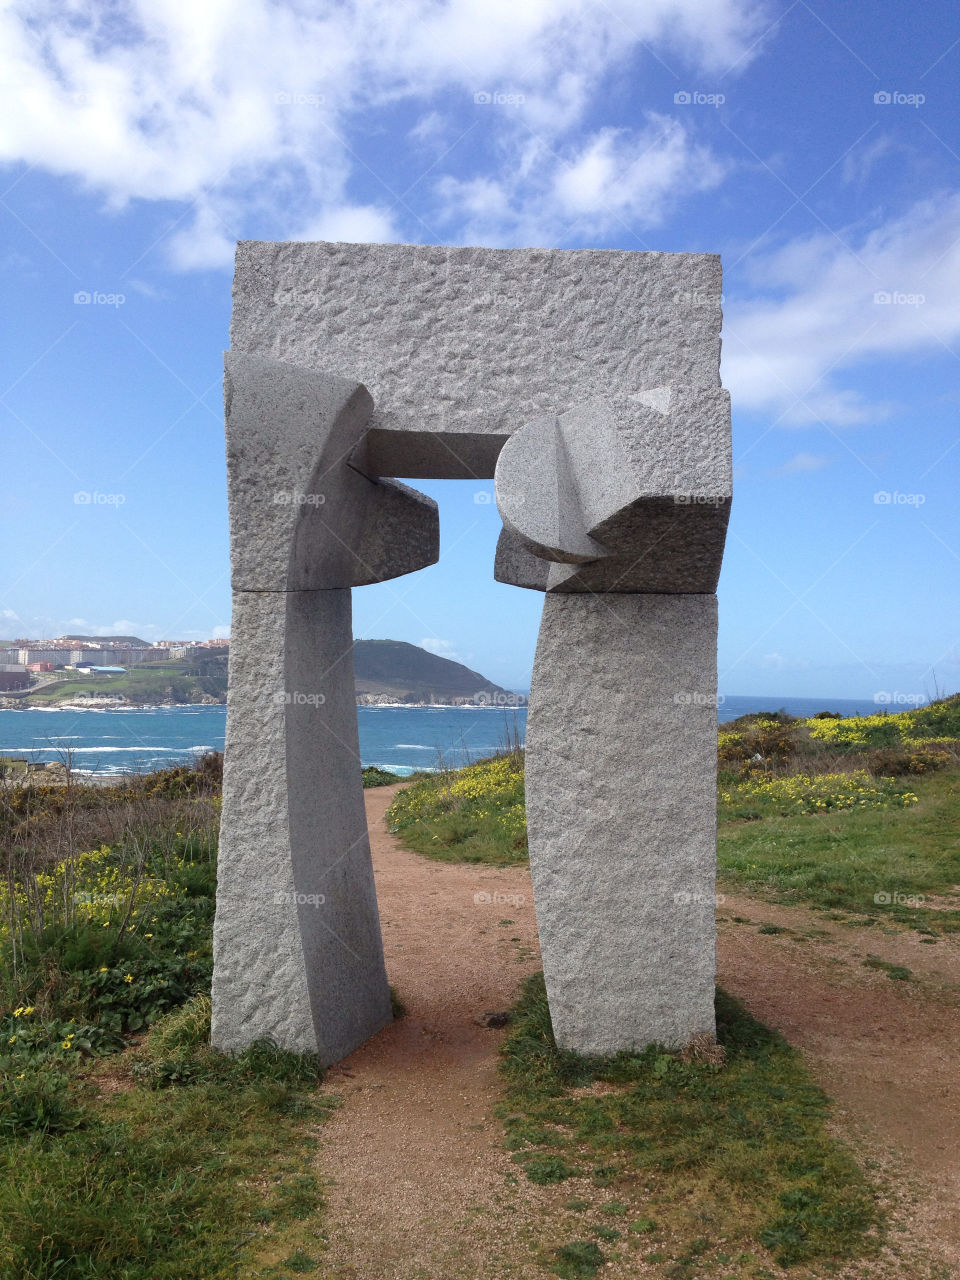 sculpture door hercules dolmen by iDavidHD